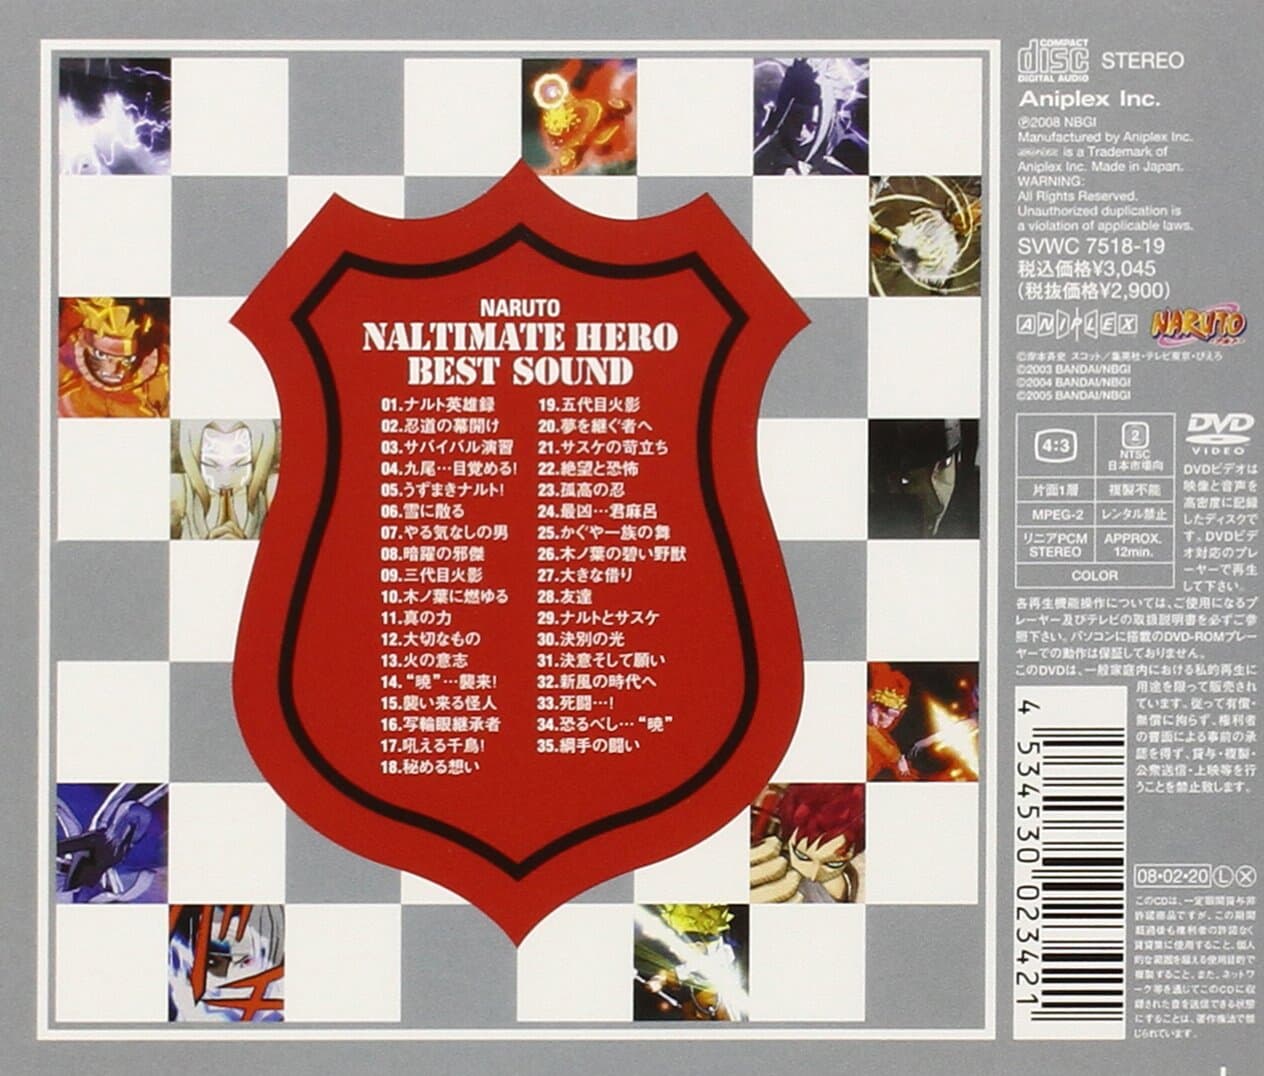 나루토 Naruto 나루티멧 Naltimate Hero Best Sound Original Game Soundtrack